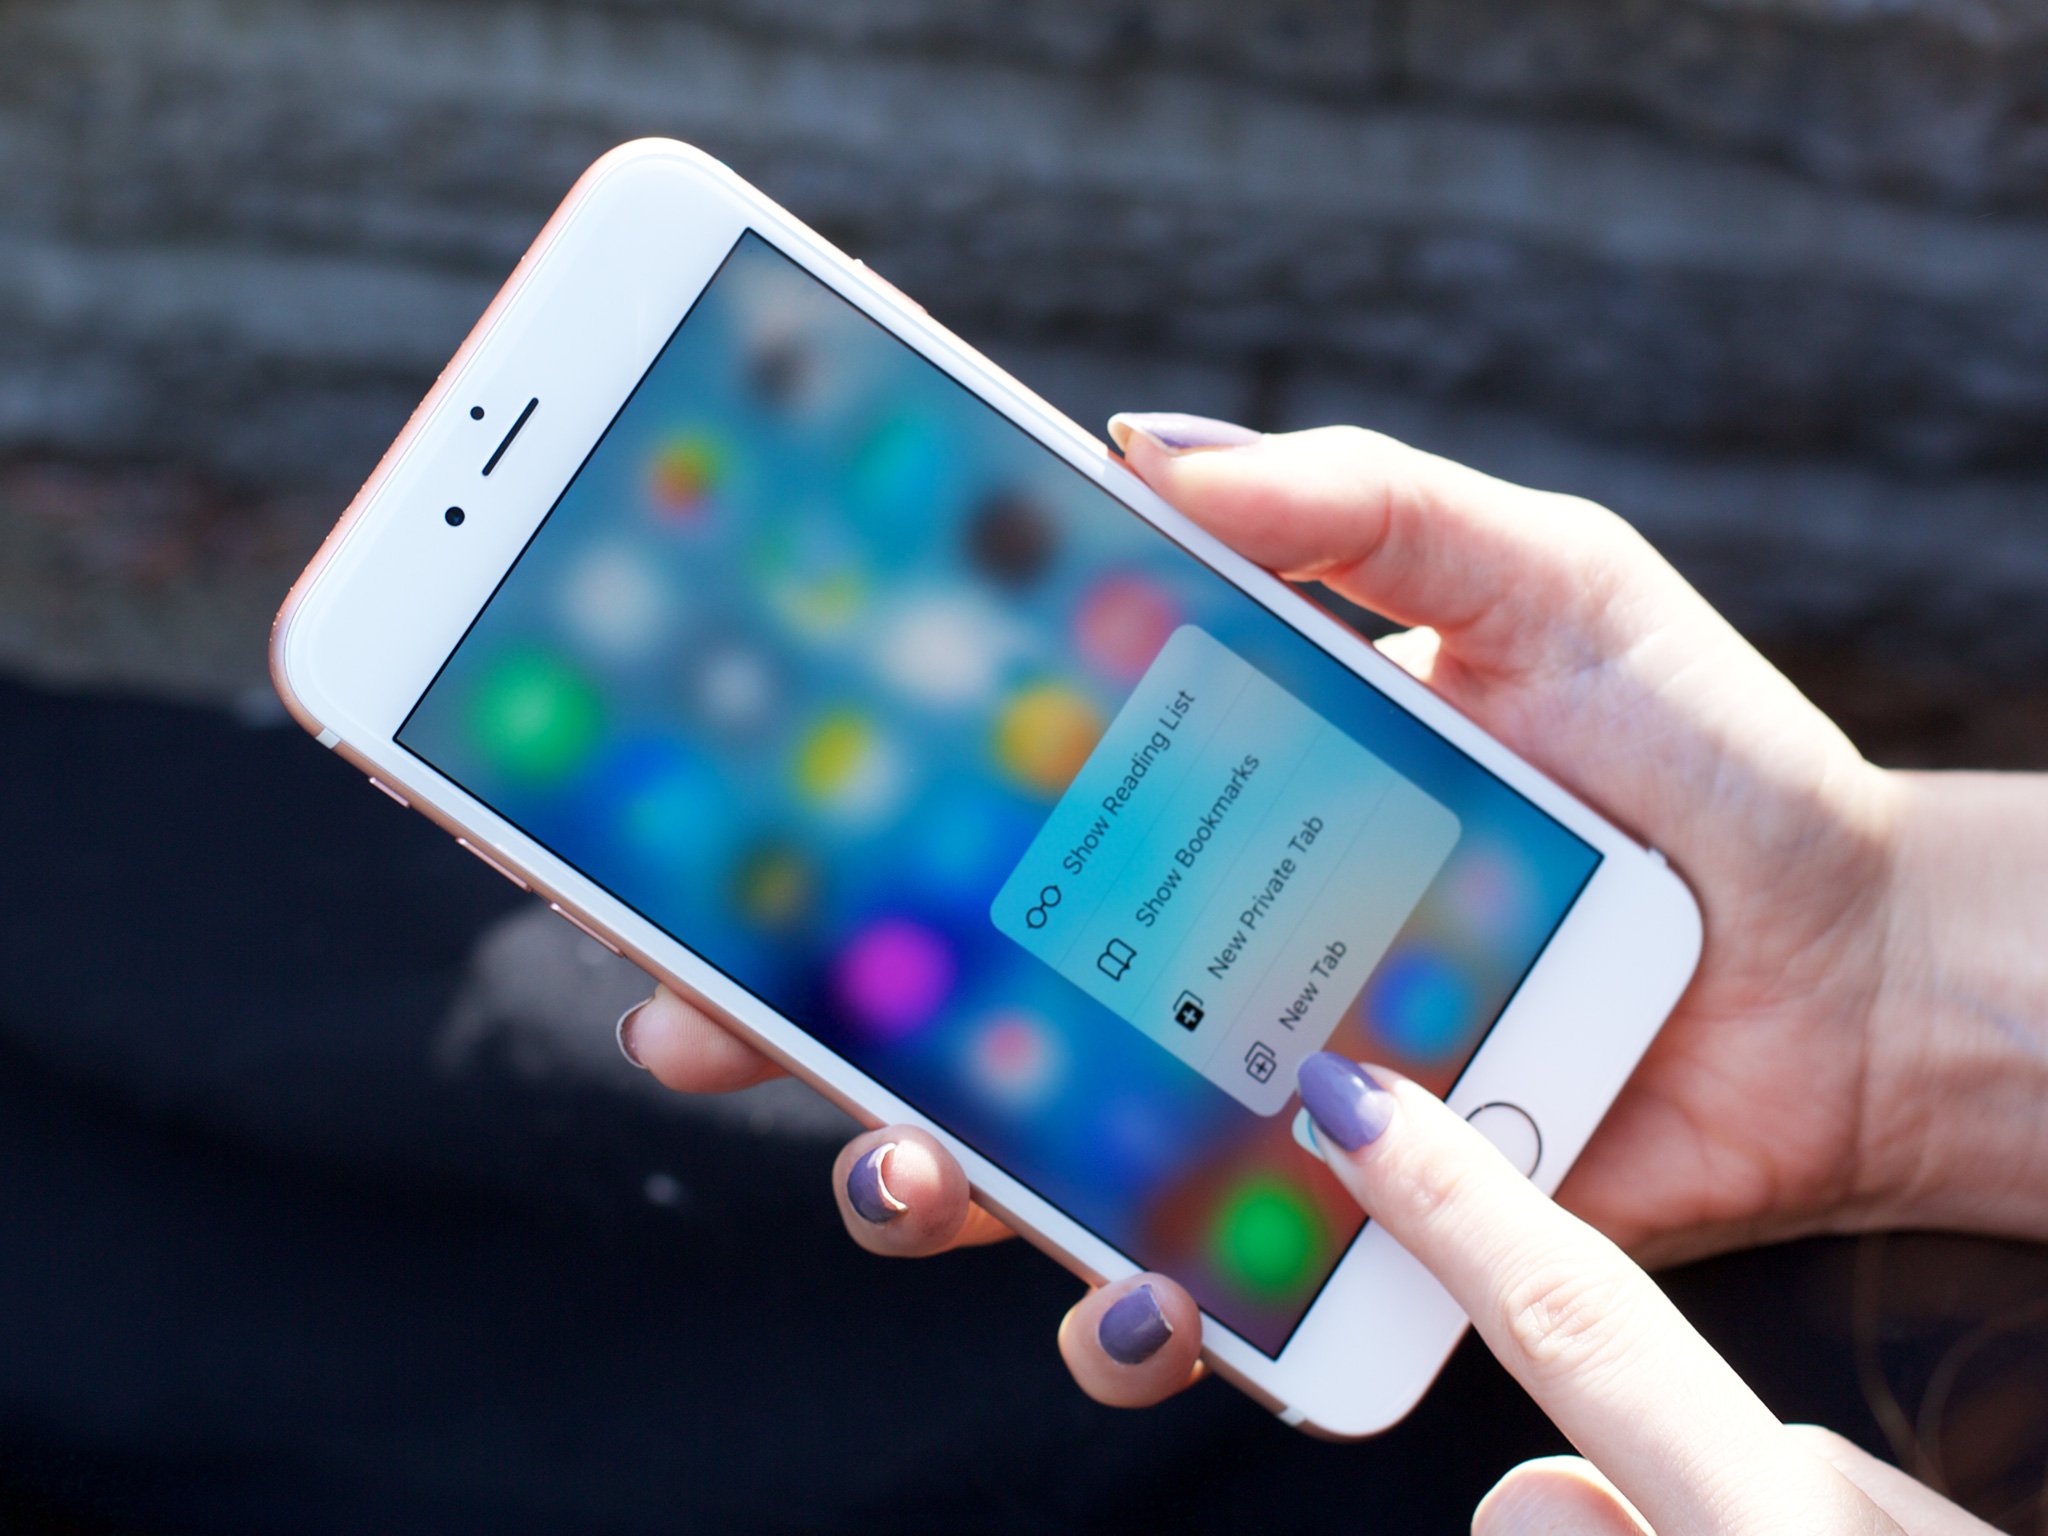 Te explicamos cómo buscar un iPhone perdido paso a paso | Digital Trends Español